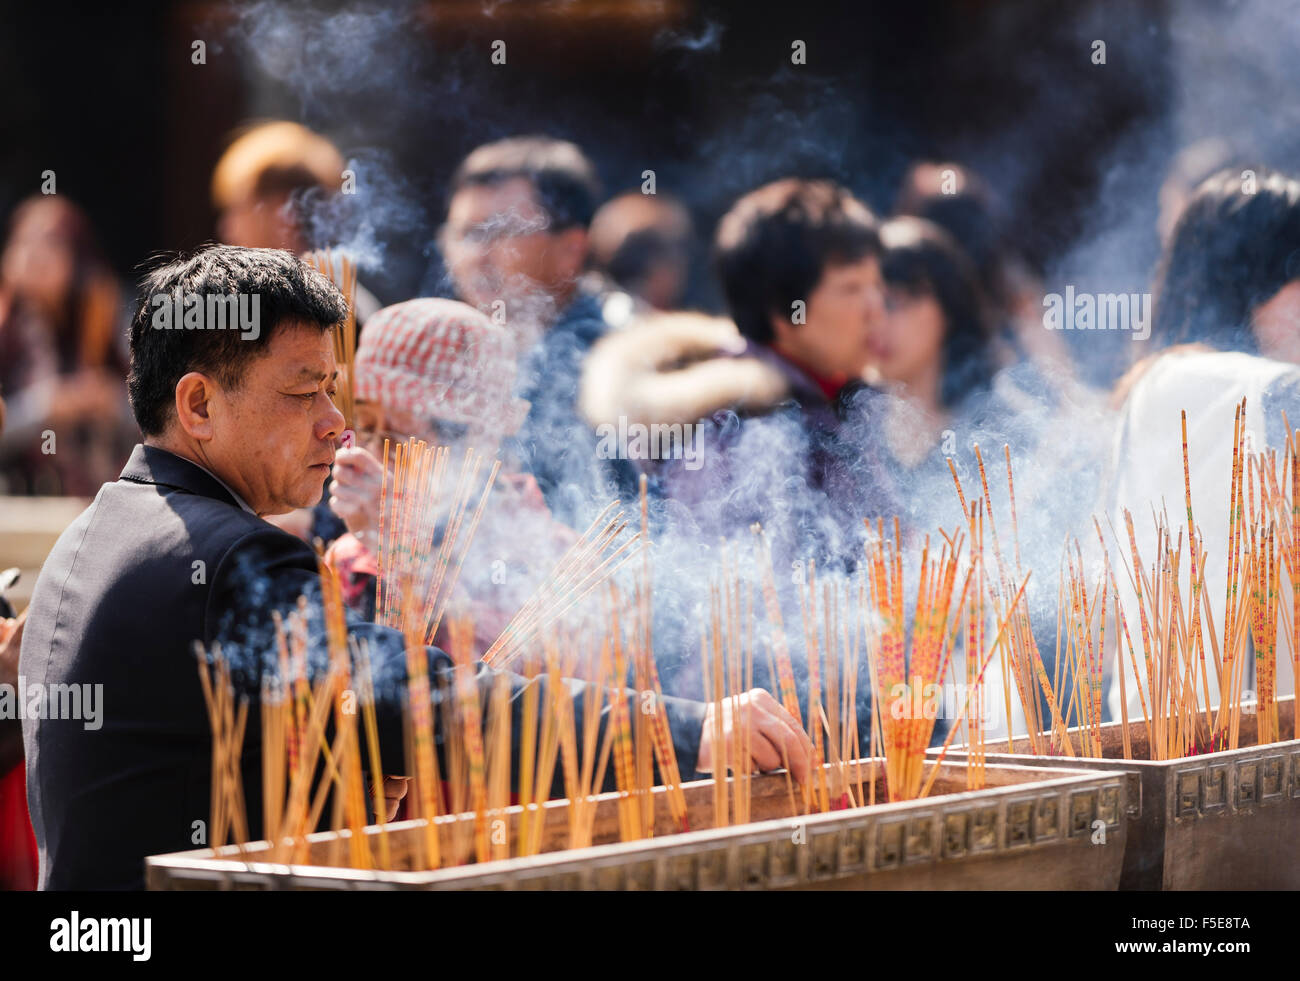 People burning incense outside Wong Tai Sin Temple, Kowloon, Hong Kong, China, Asia Stock Photo